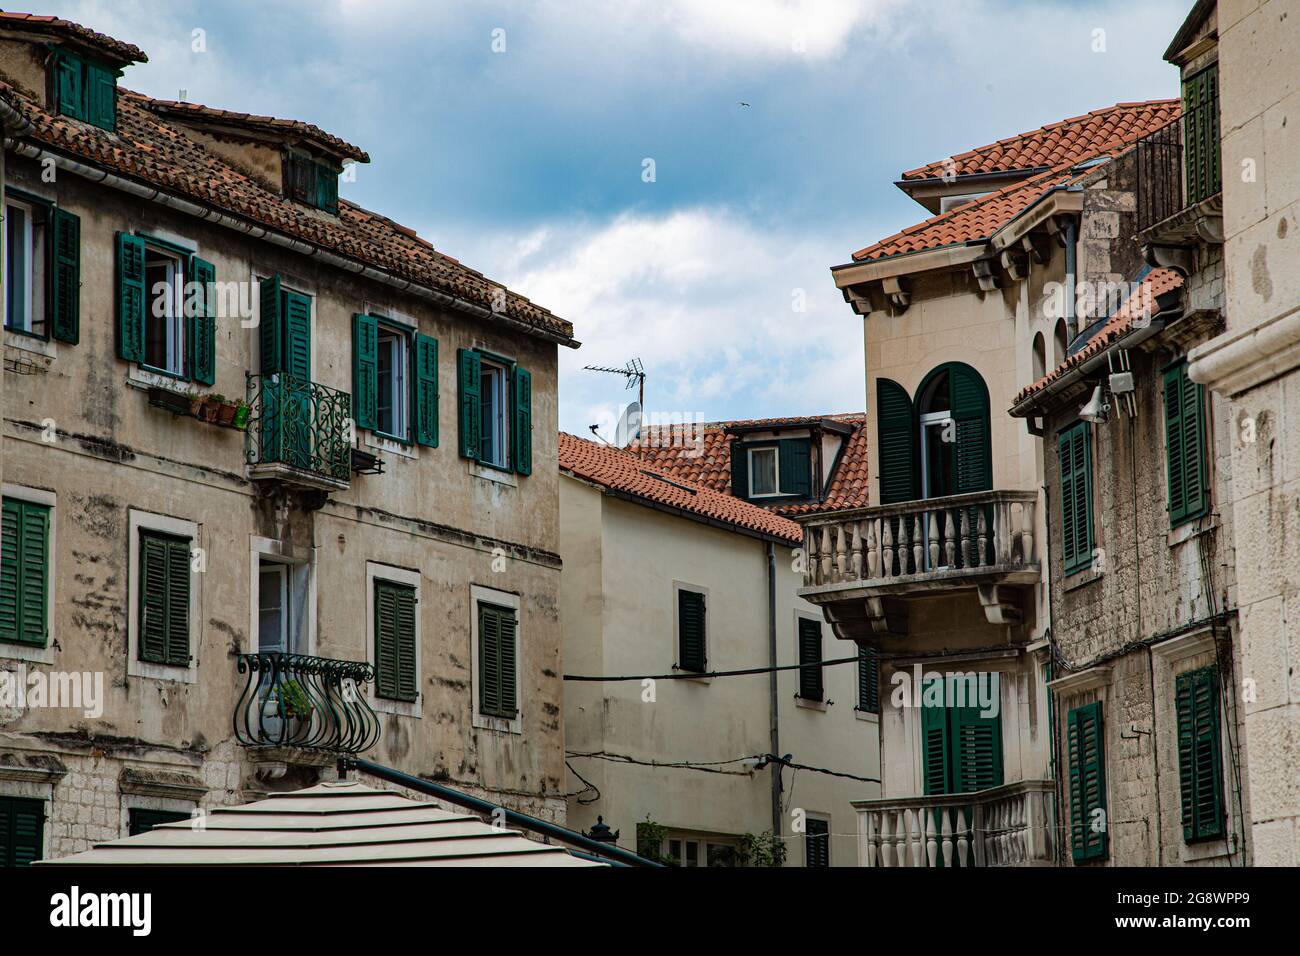 Ciudad fundada por Diocleciano en Croacia a orillas del mar adriatico, con Casco Antiguo de calles estrechas con arquitectura muy característica Stockfoto